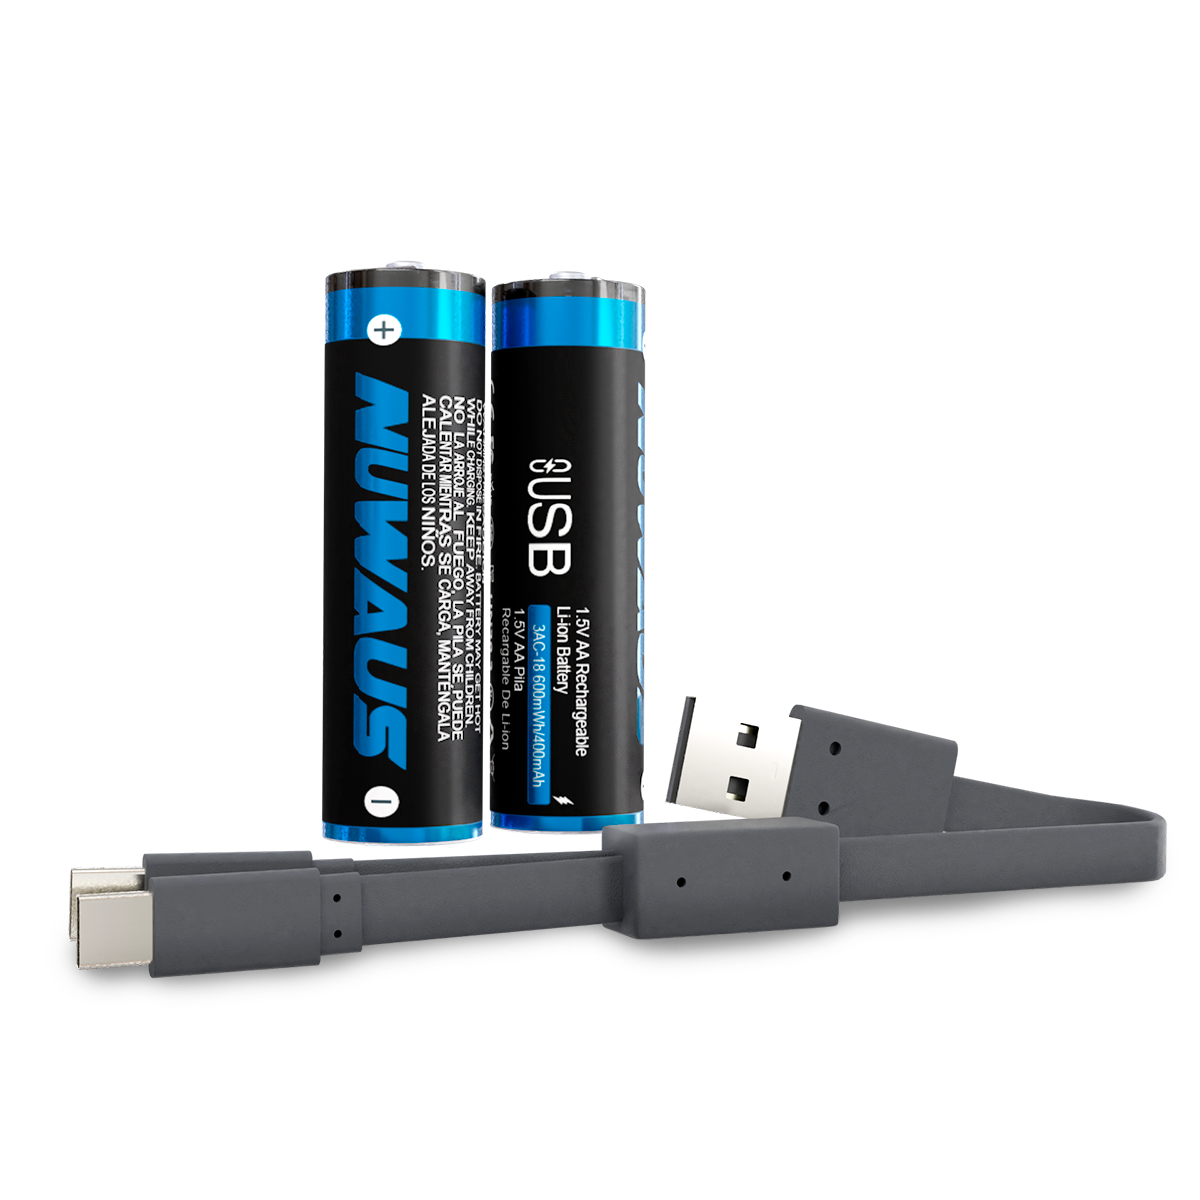 Pilas AA recargables USB de Pale Blue, iones de litio de 1.5 V 1700 mAh,  carga 1.5 horas, más de 1000 ciclos, cable de carga USB-A a USB-C 4 en 1